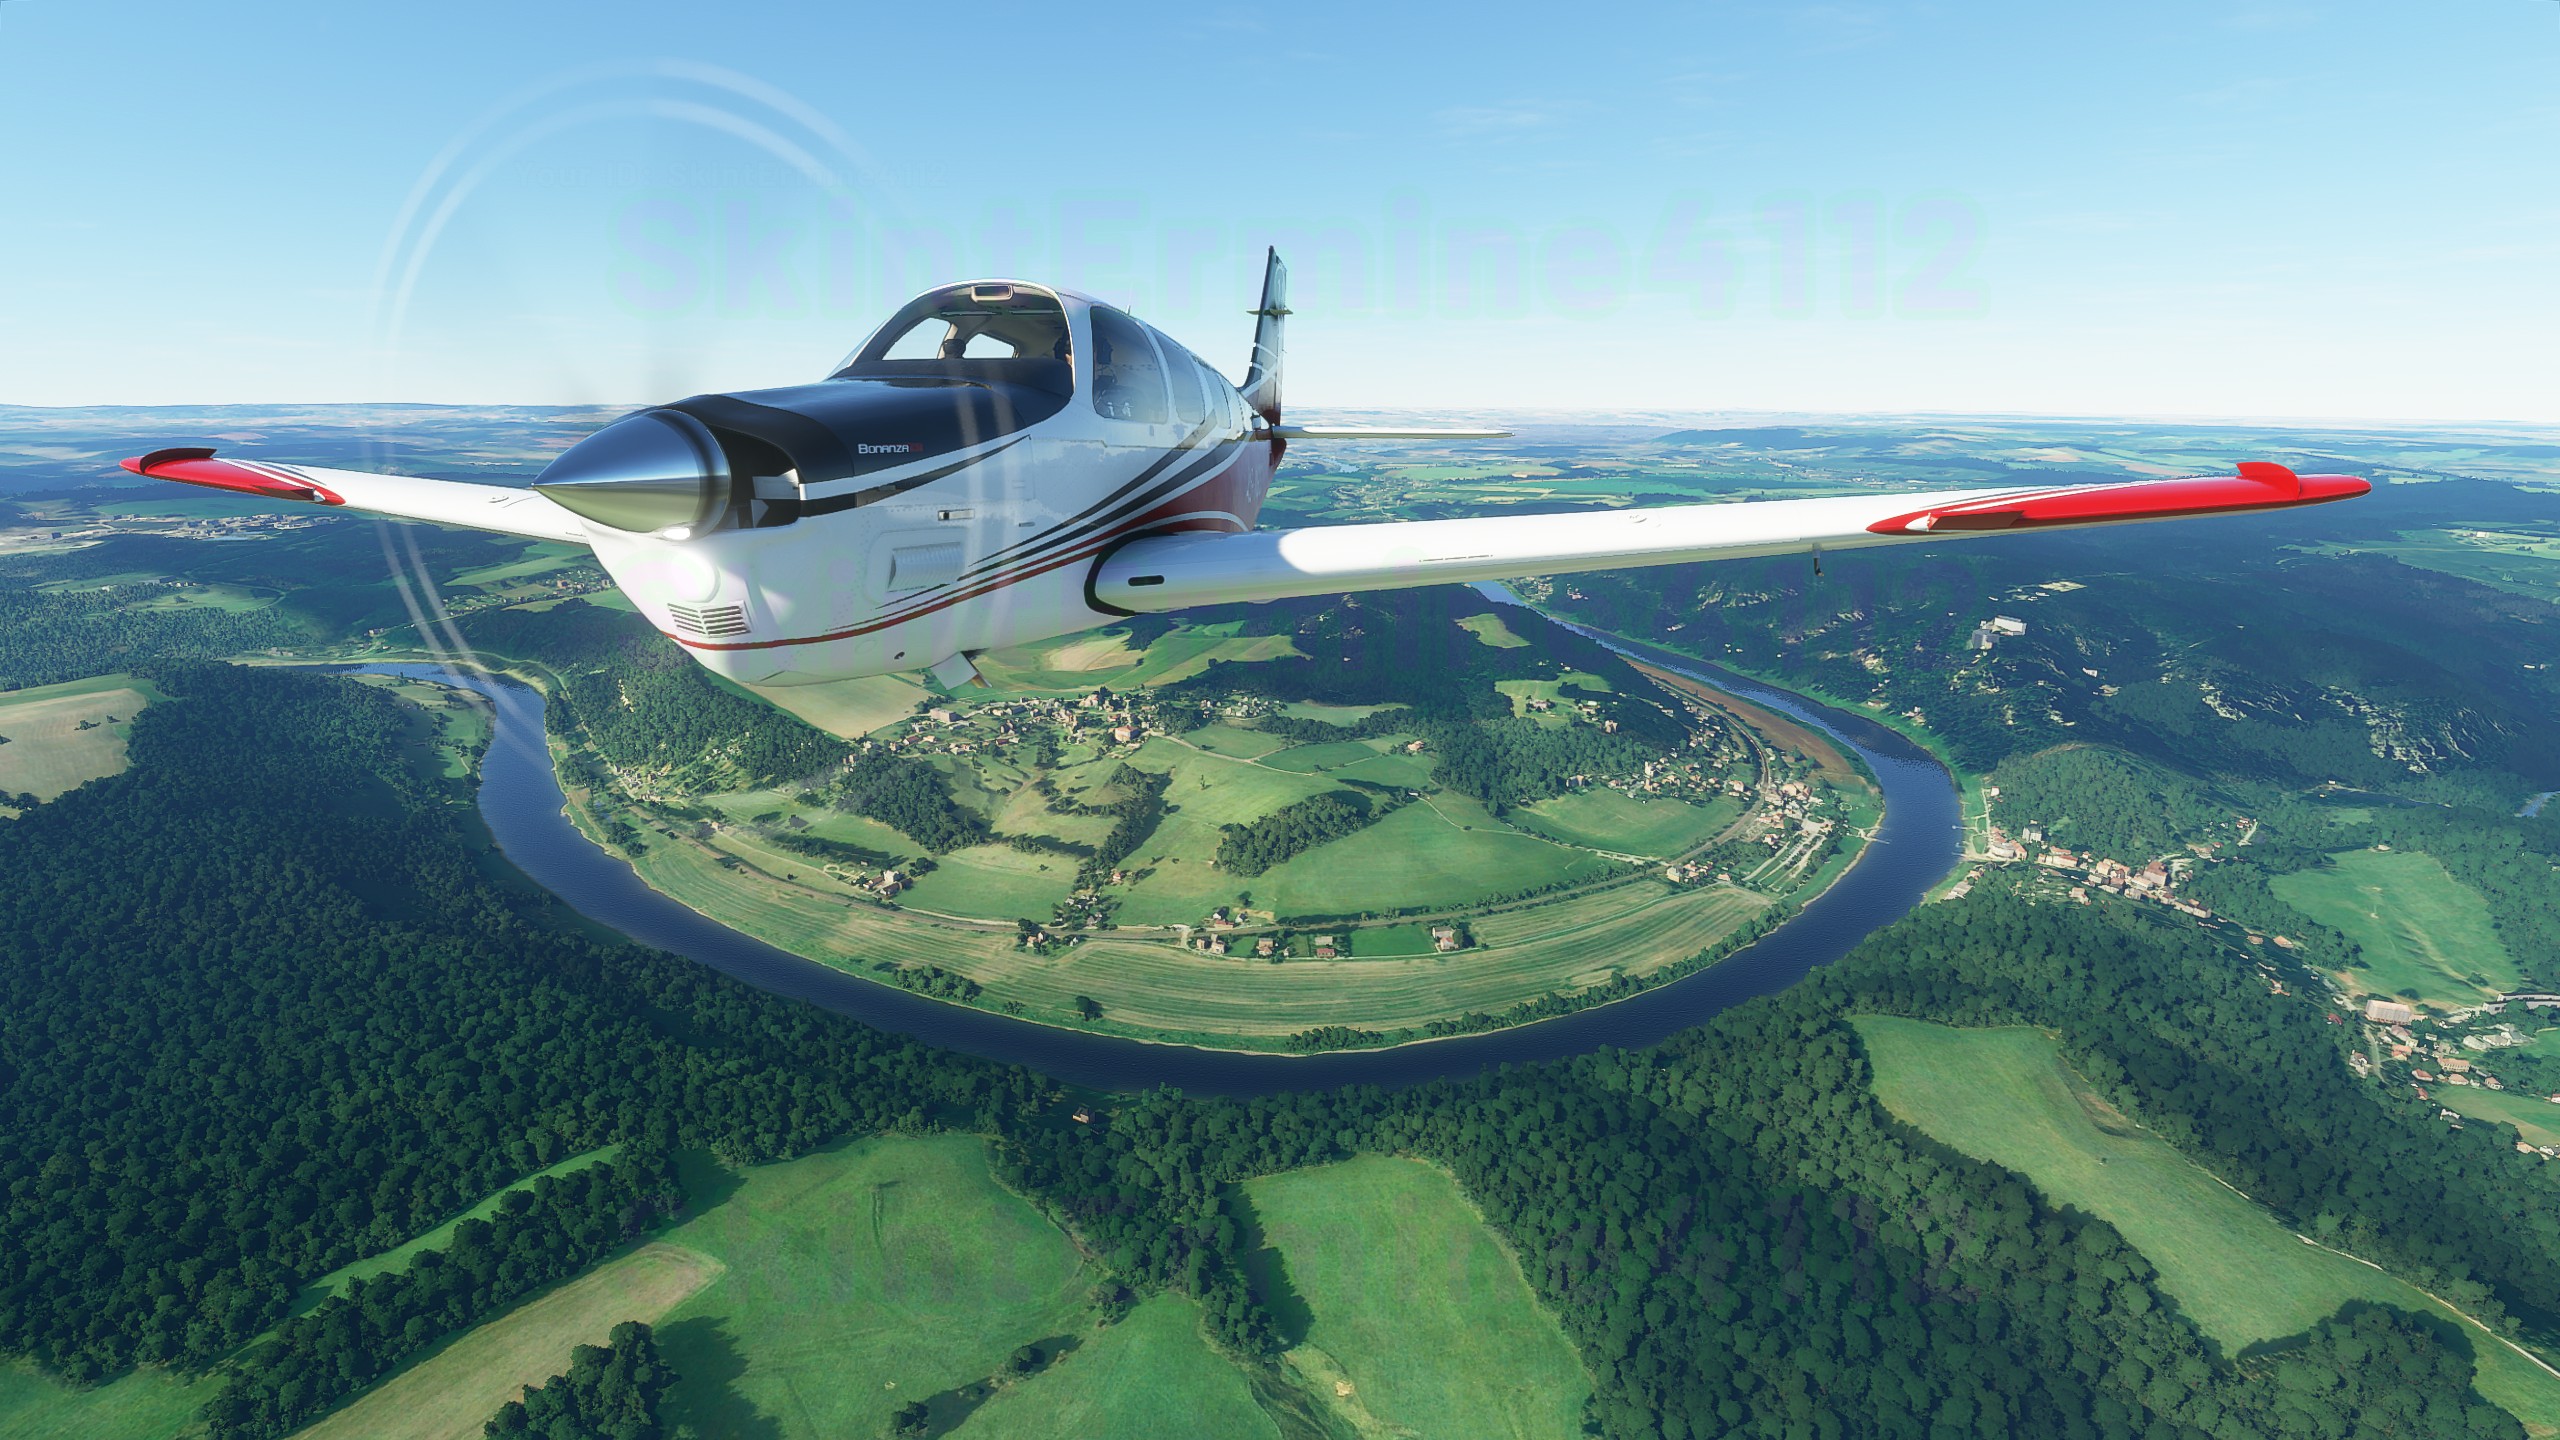 Cùng xem bộ ảnh cực đẹp từ Flight Simulator, tựa game nặng nhất hiện nay